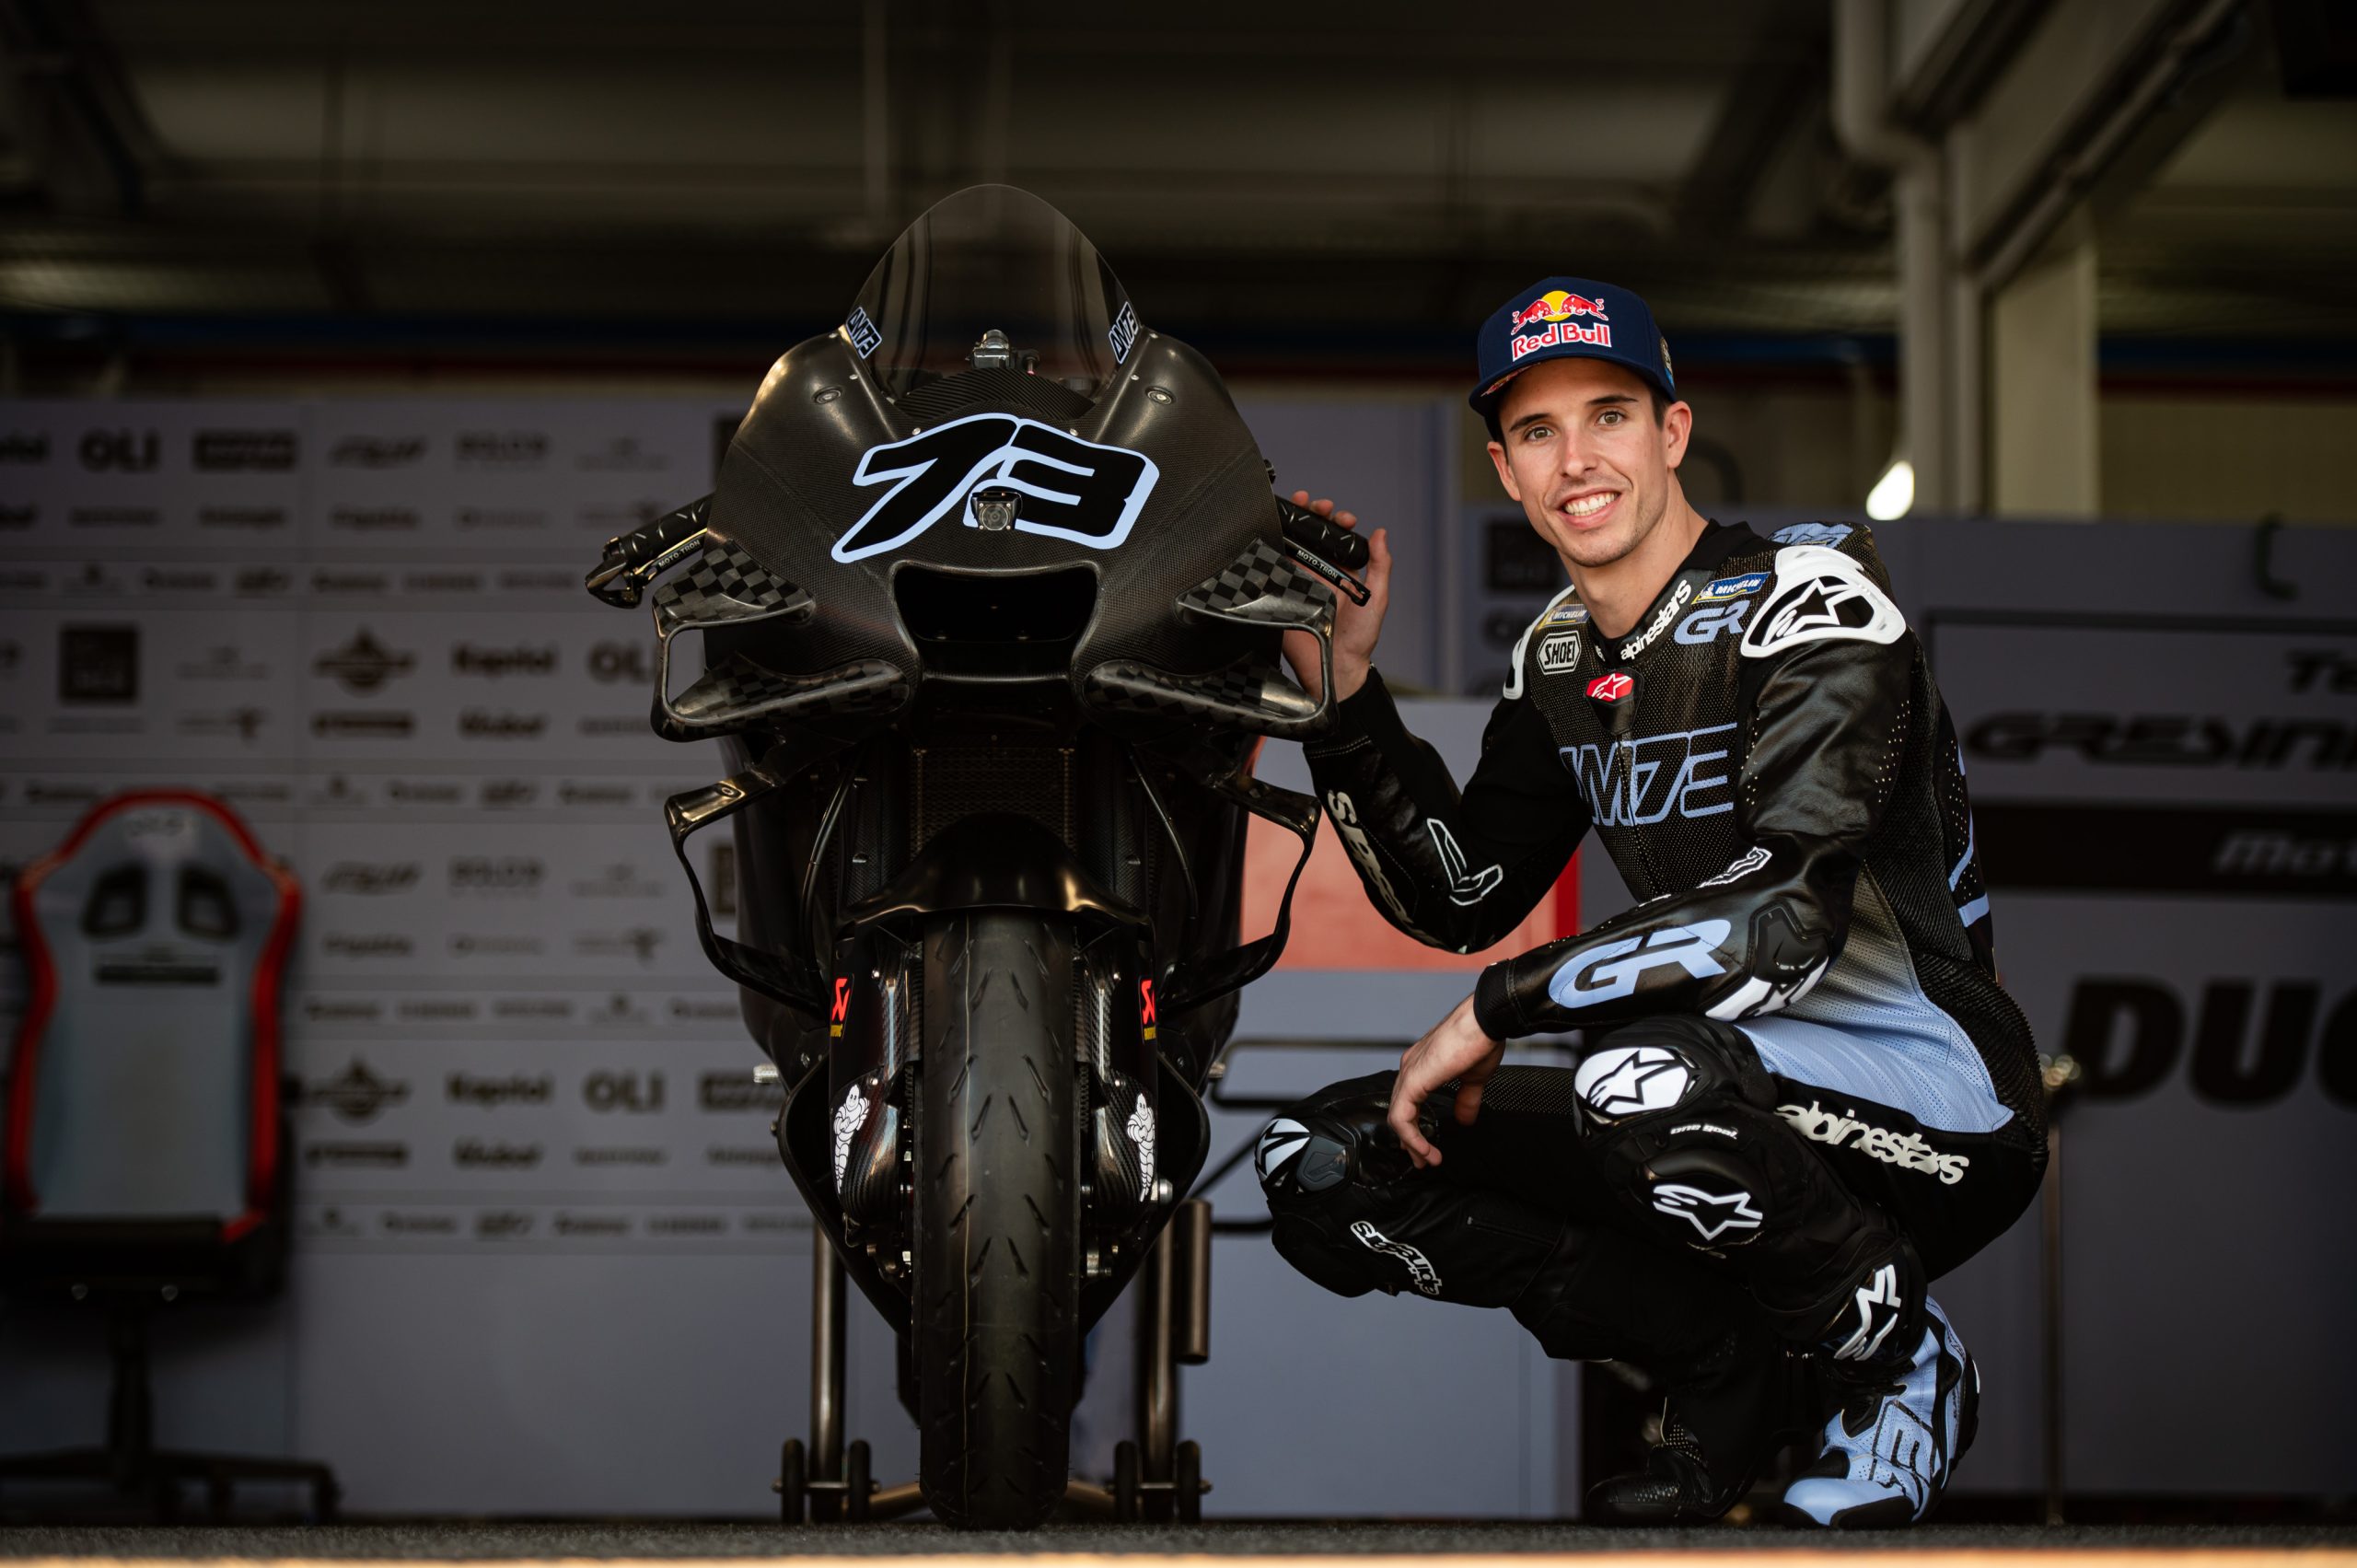 Alex Marquez avec la Gresini Ducati